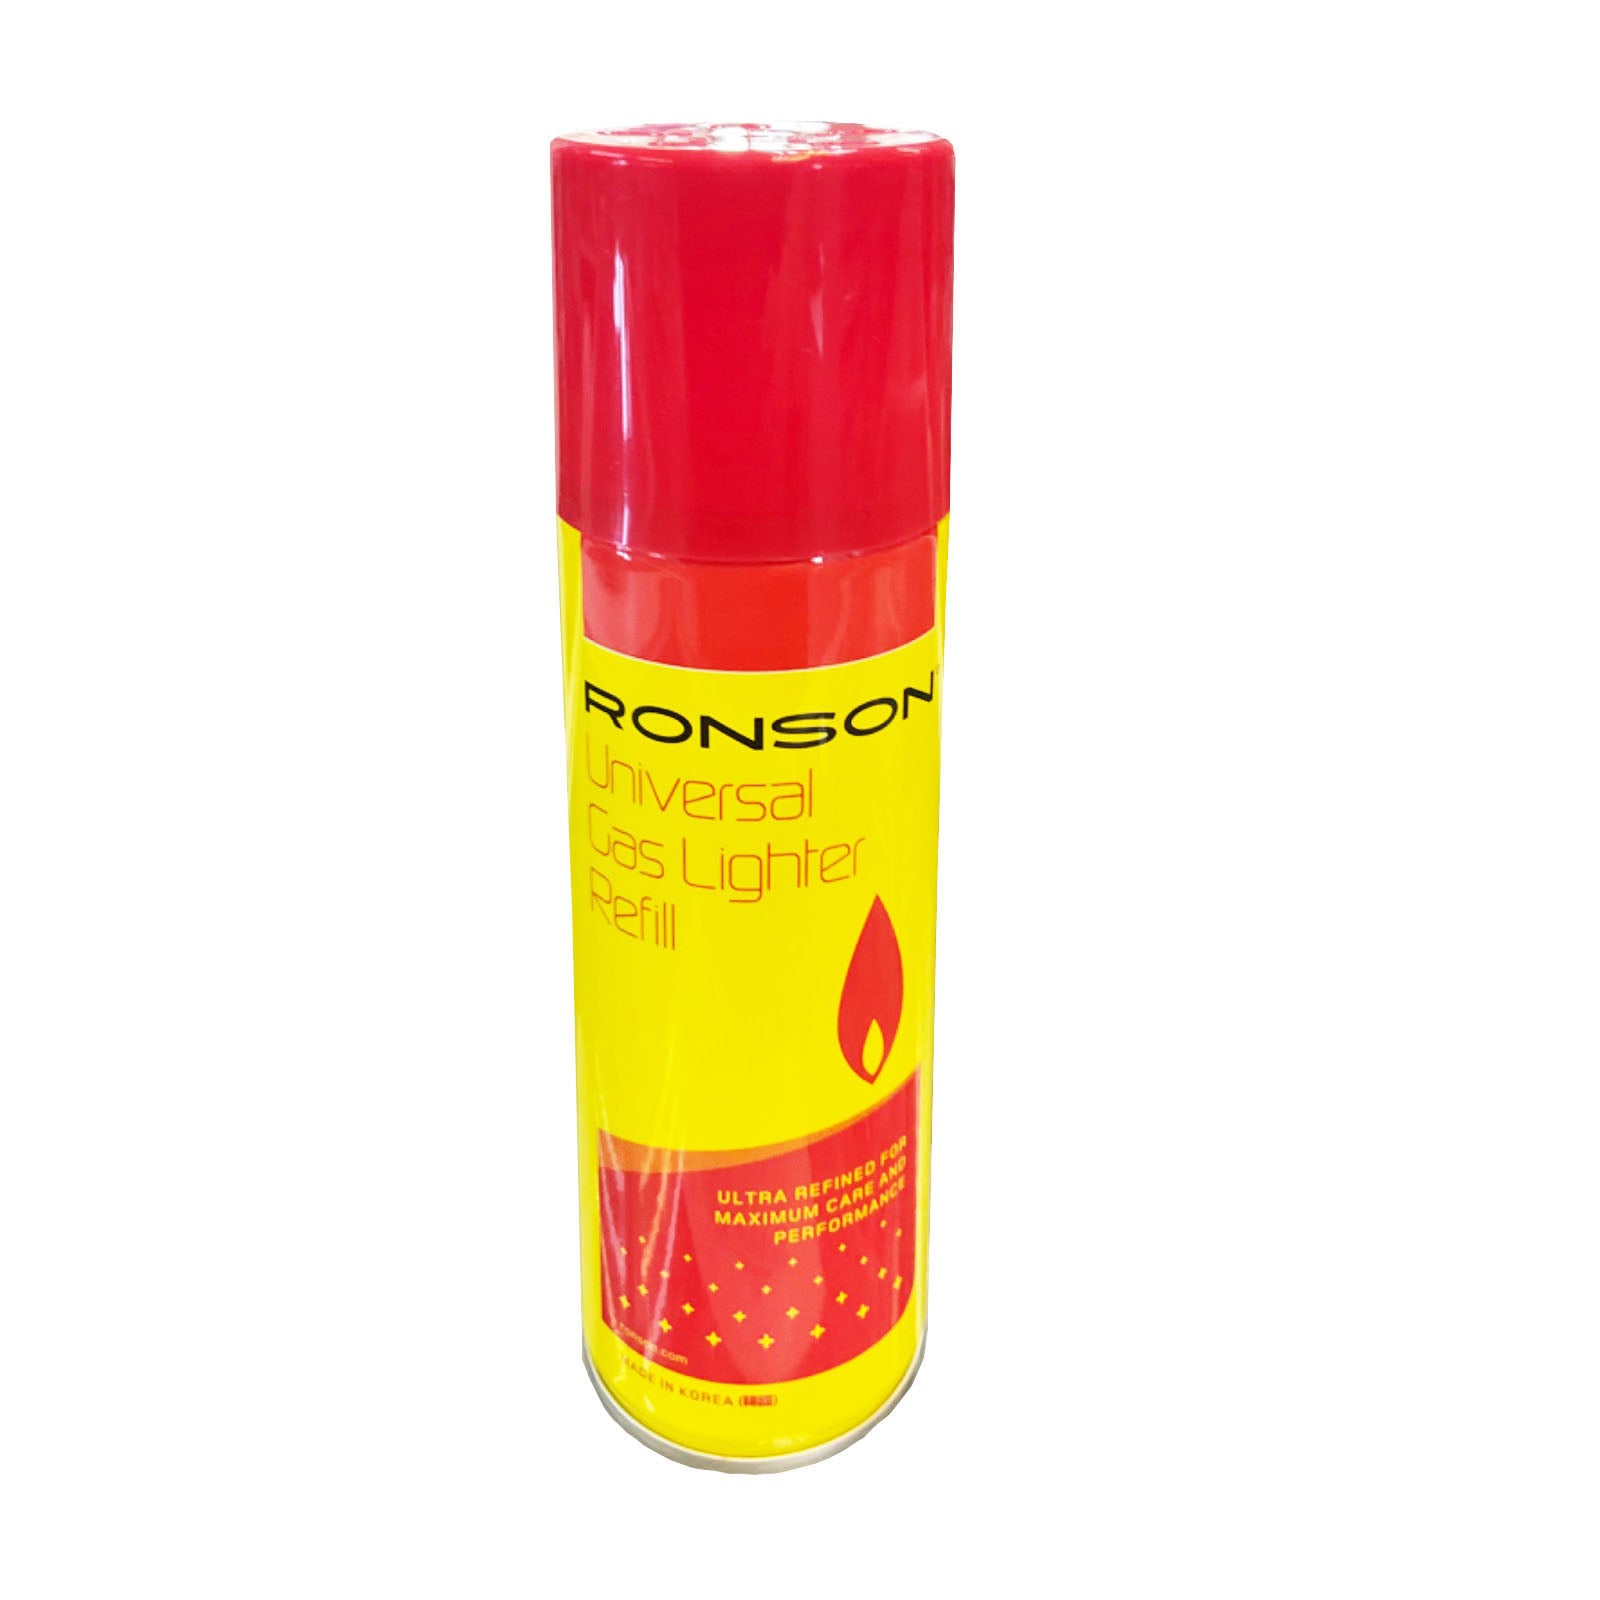 Ronson Universal Butane Lighter Refill 250ml